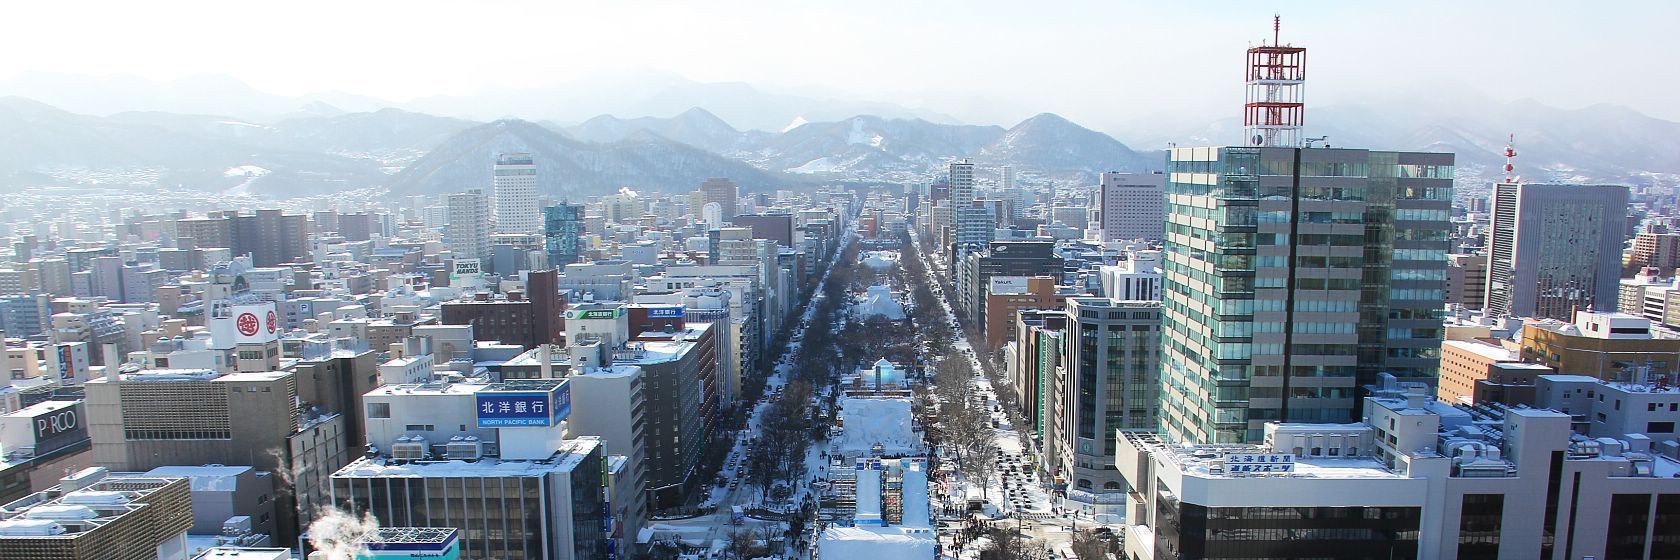 Vinter-Sapporo